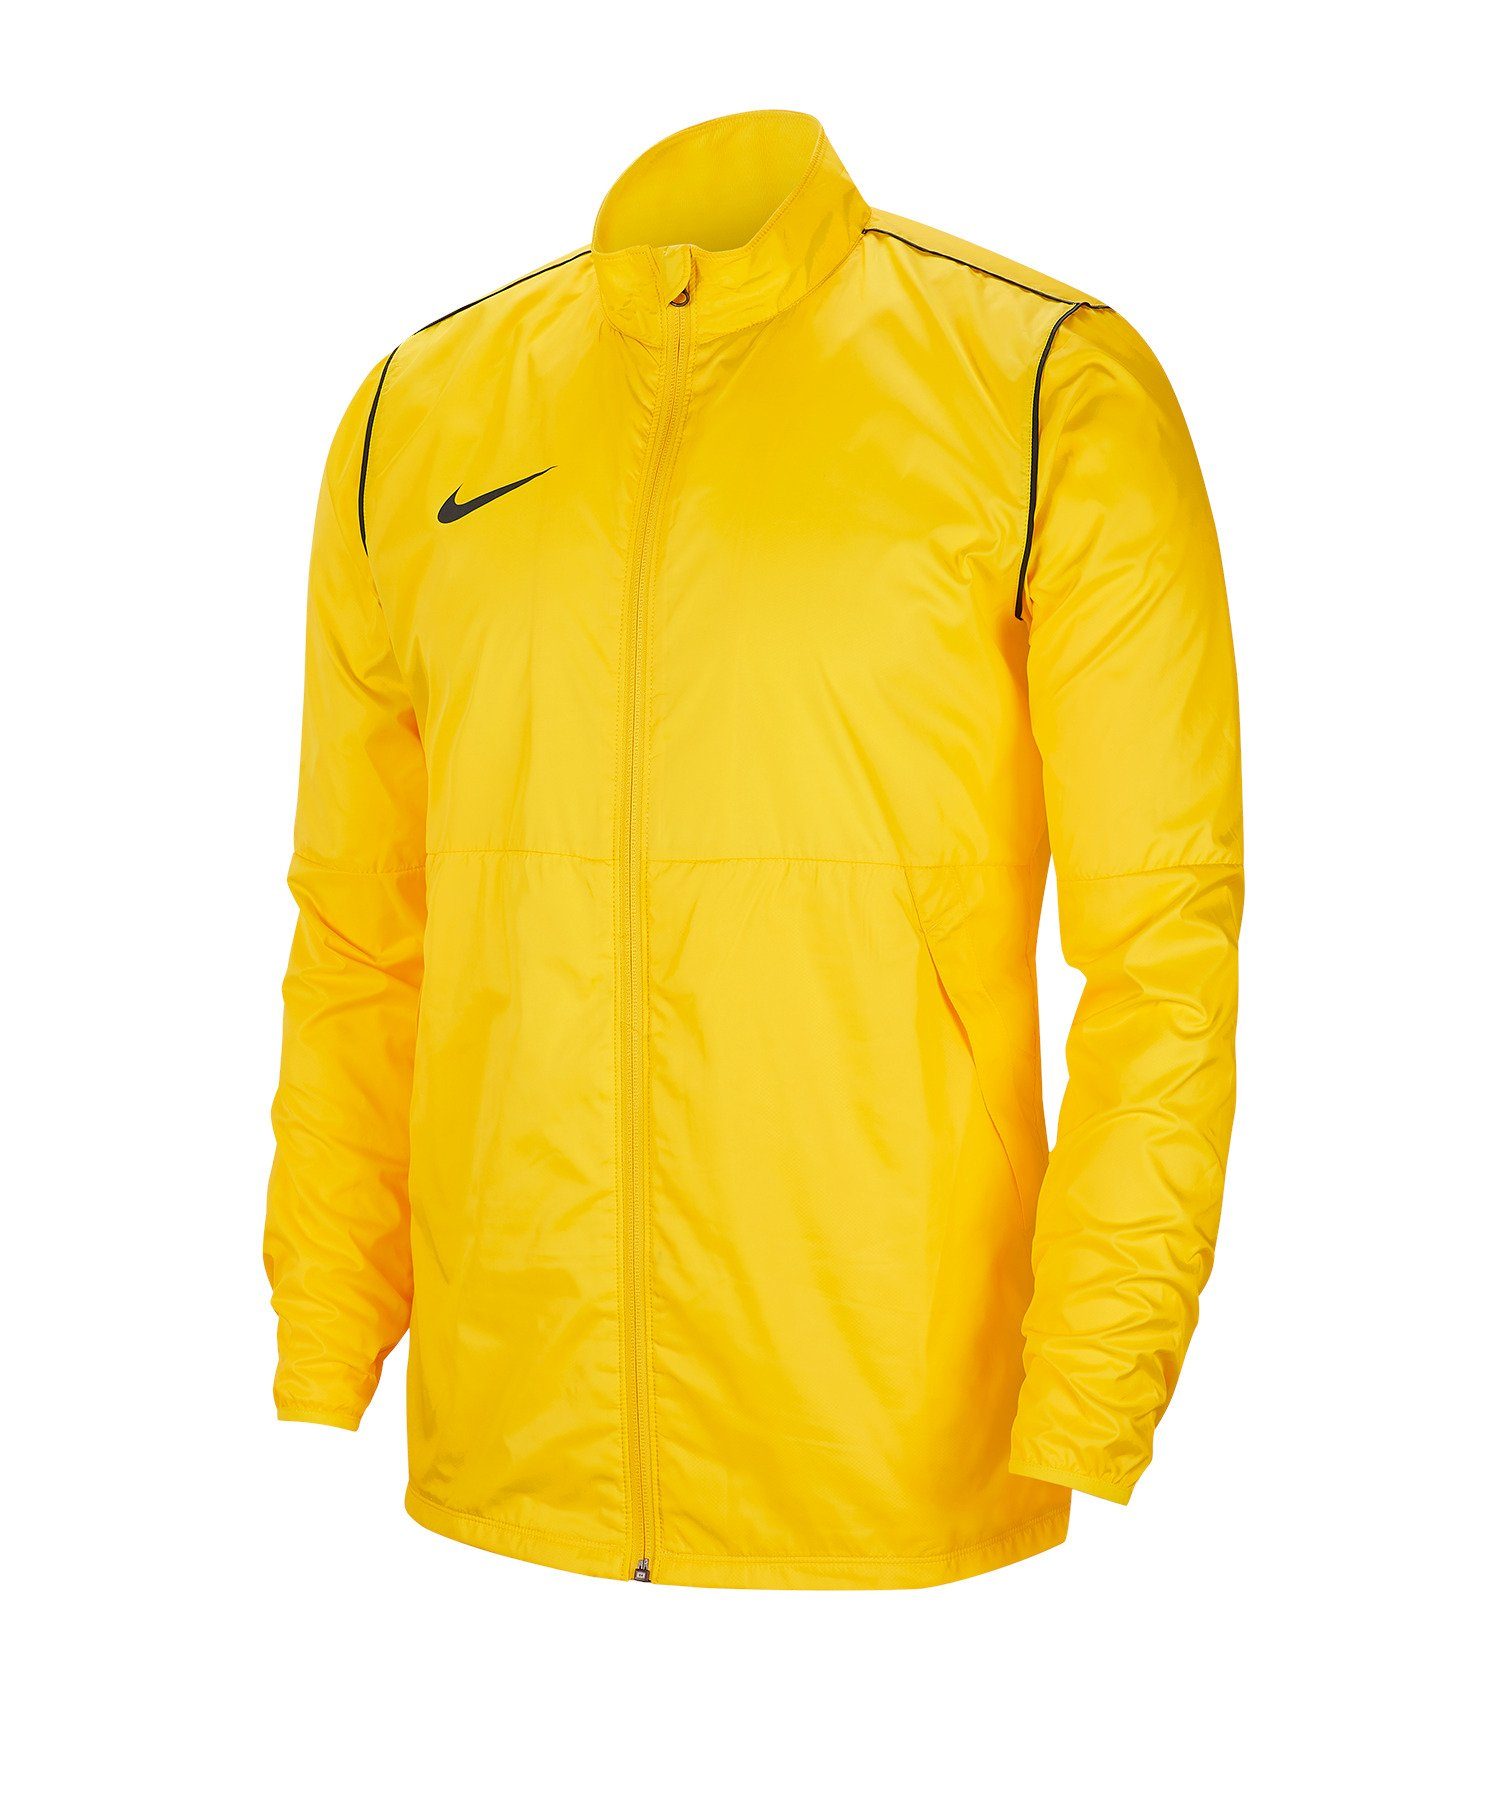 Park 20 Regenjacke gelb Nike Sweatjacke